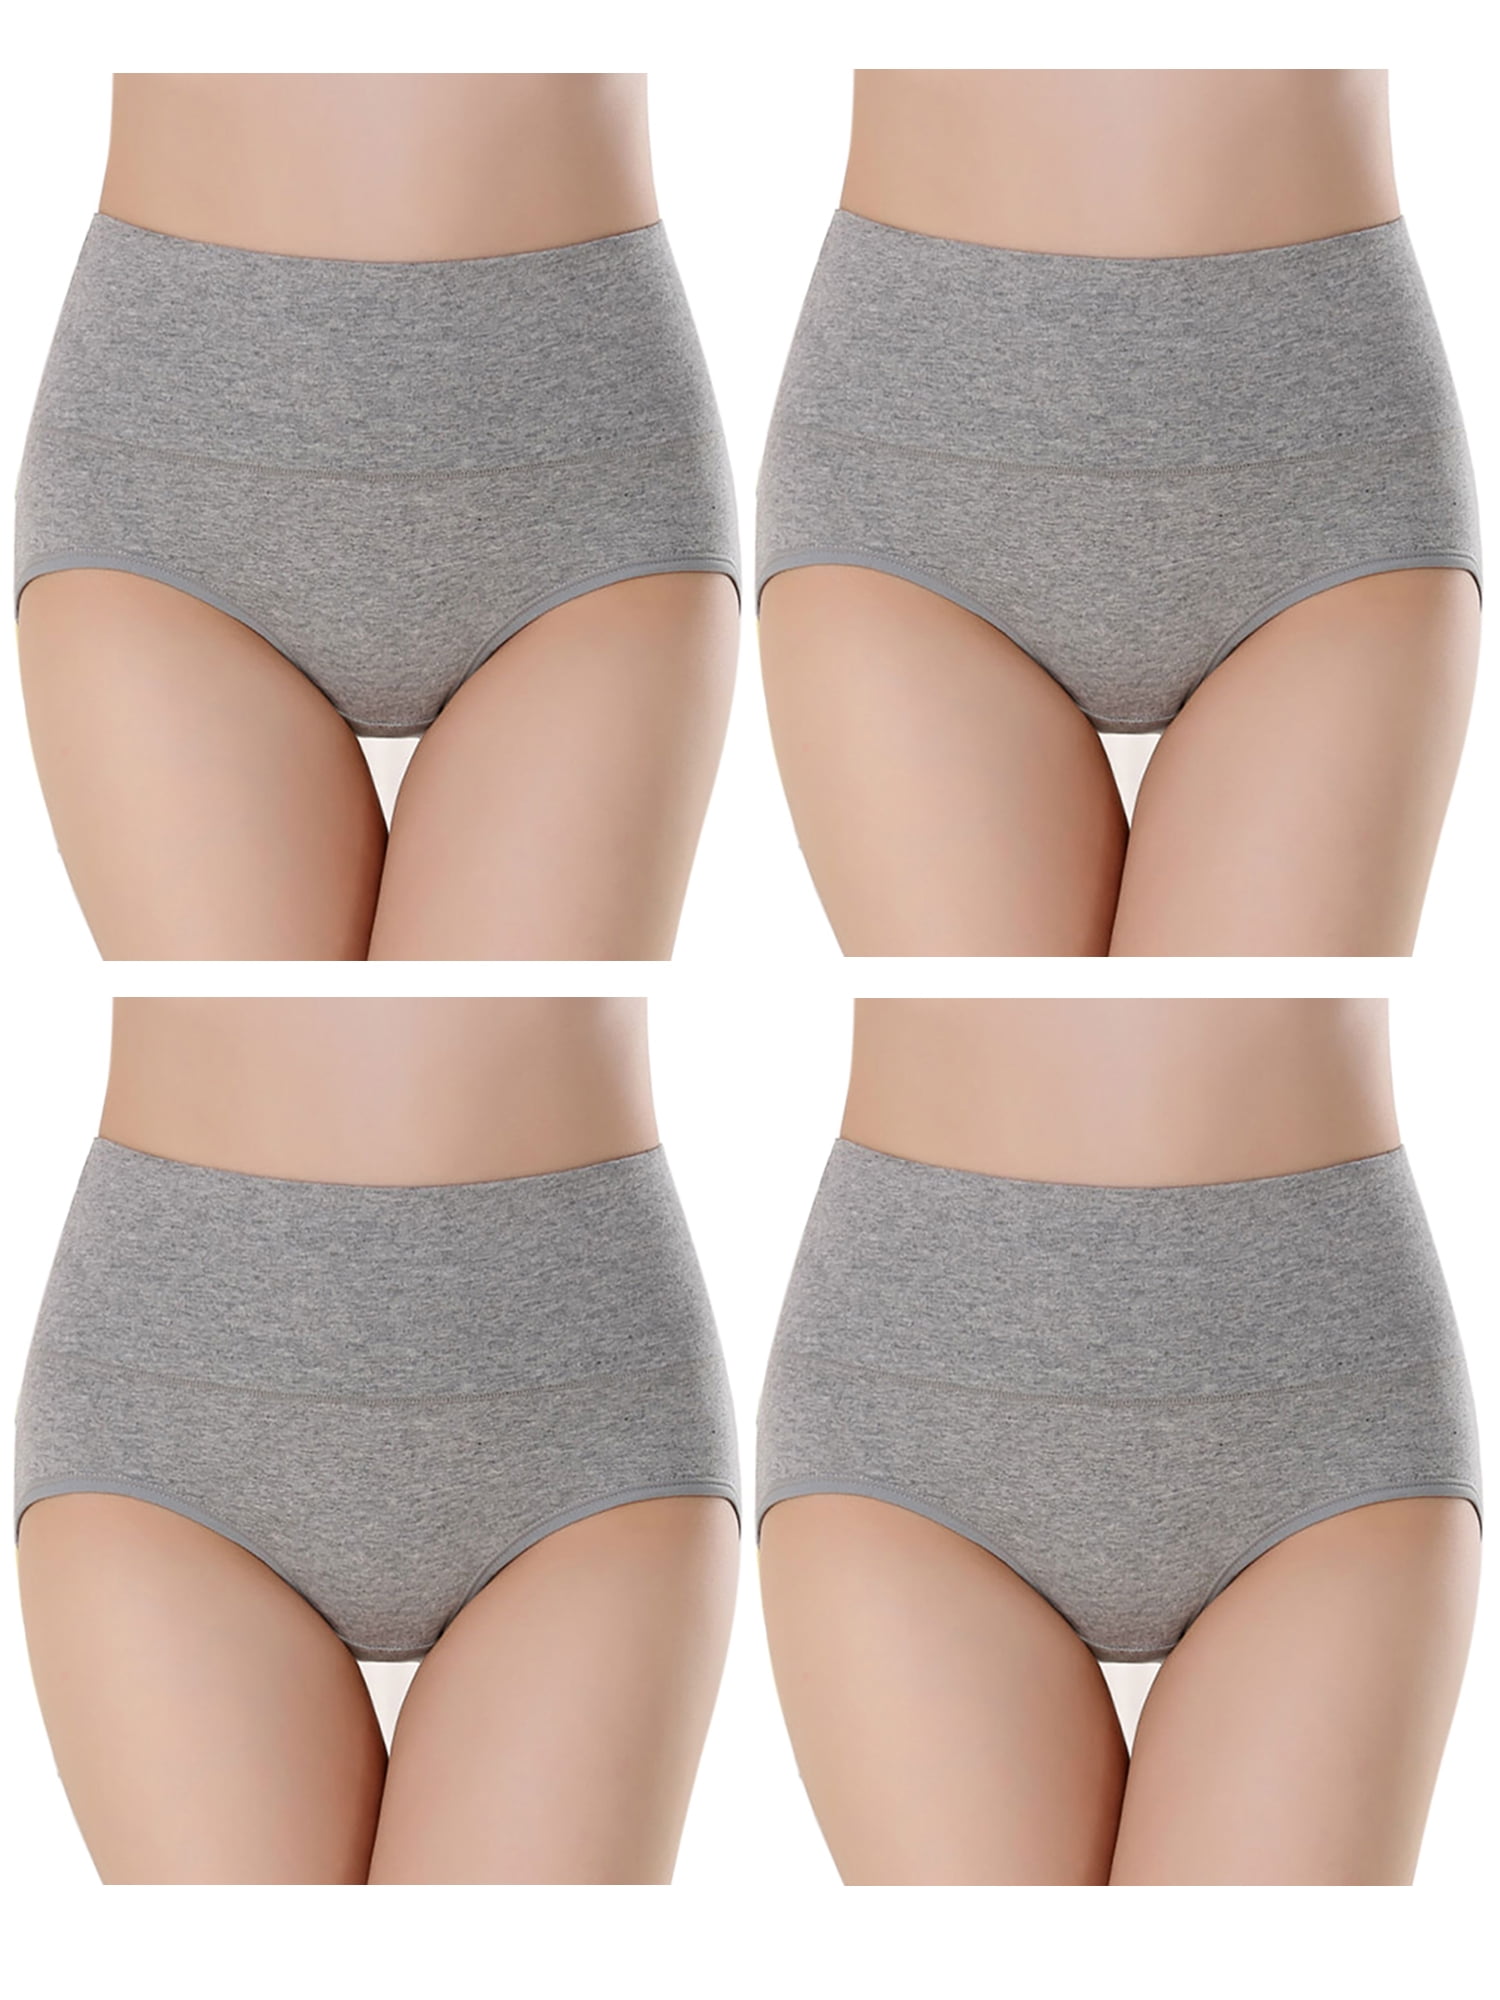 Womens' Comfort Cotton Briefs Firm Tummy Control Underwear Panty High Waist  Cotton Boyshorts 4-Pack 